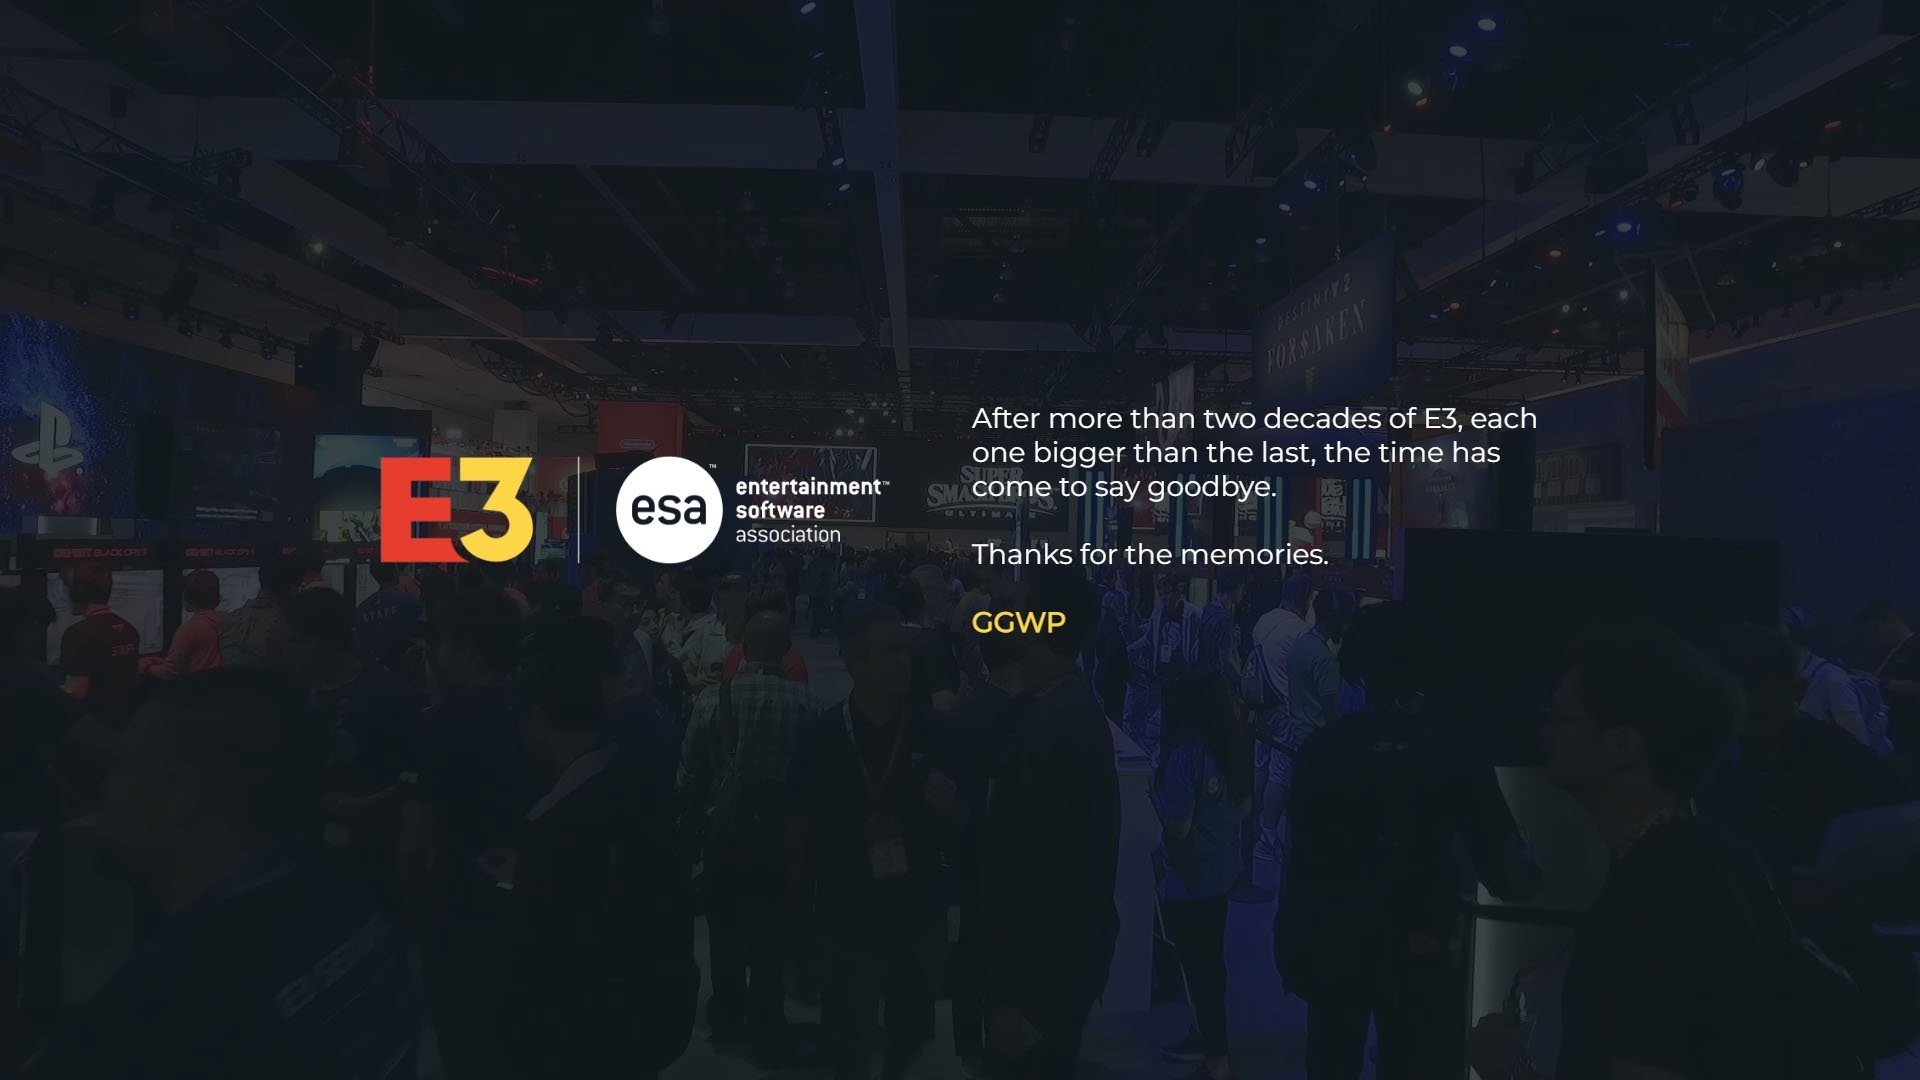 Oyun dünyasının en büyük fuarı olan E3 resmen sona erdi